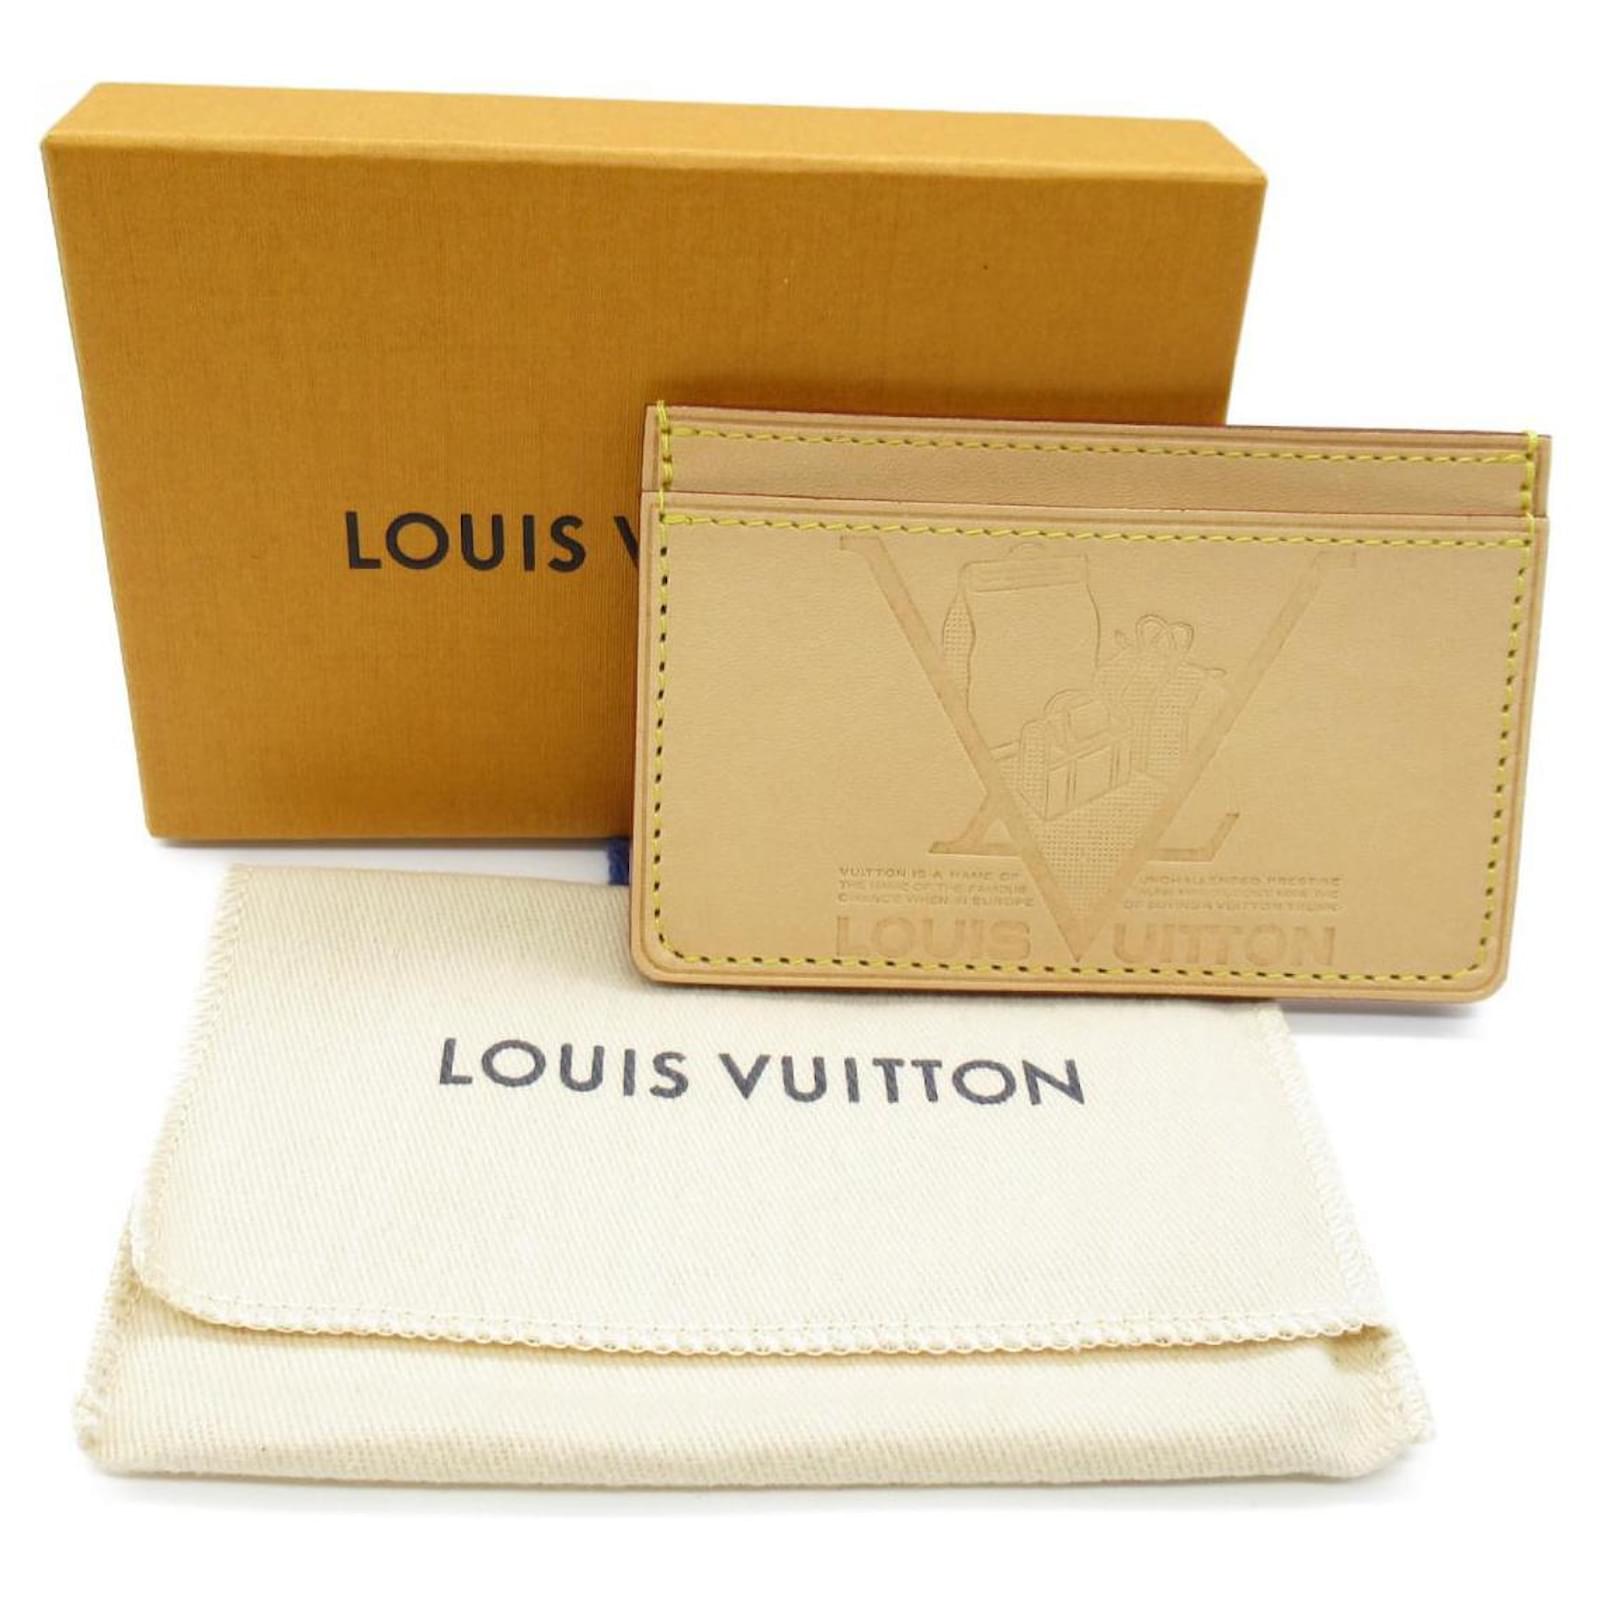 Louis Vuitton Vachetta Voyage Card Holder Beige Pony-style